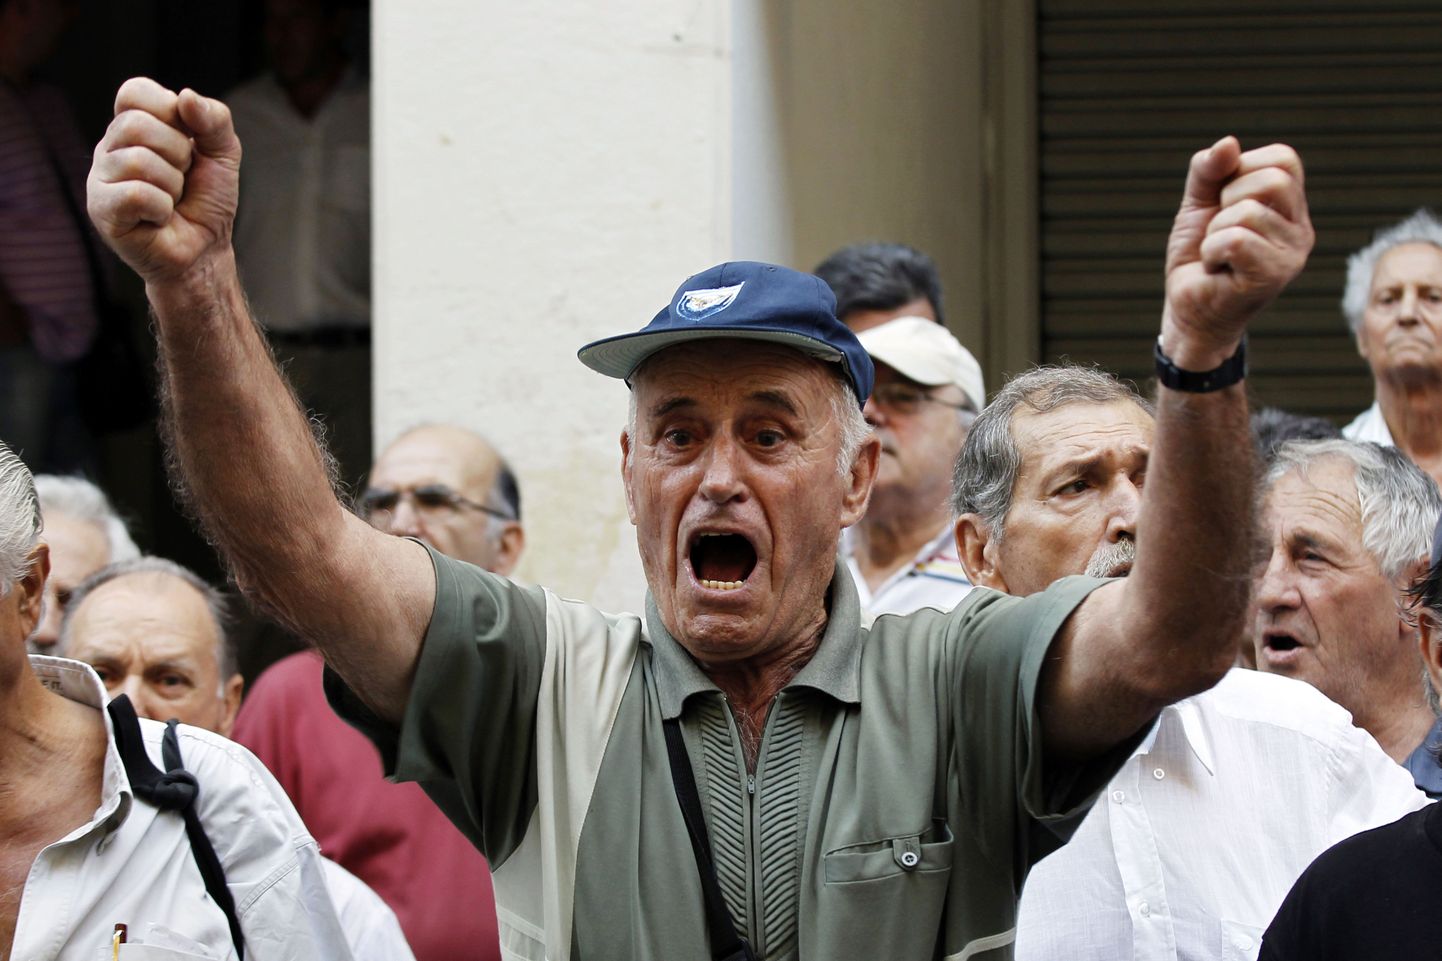 Kreeka pensionär Ateenas tervishoiuministeeriumi ees tervishoiukärbete vastu meelt avaldamas.